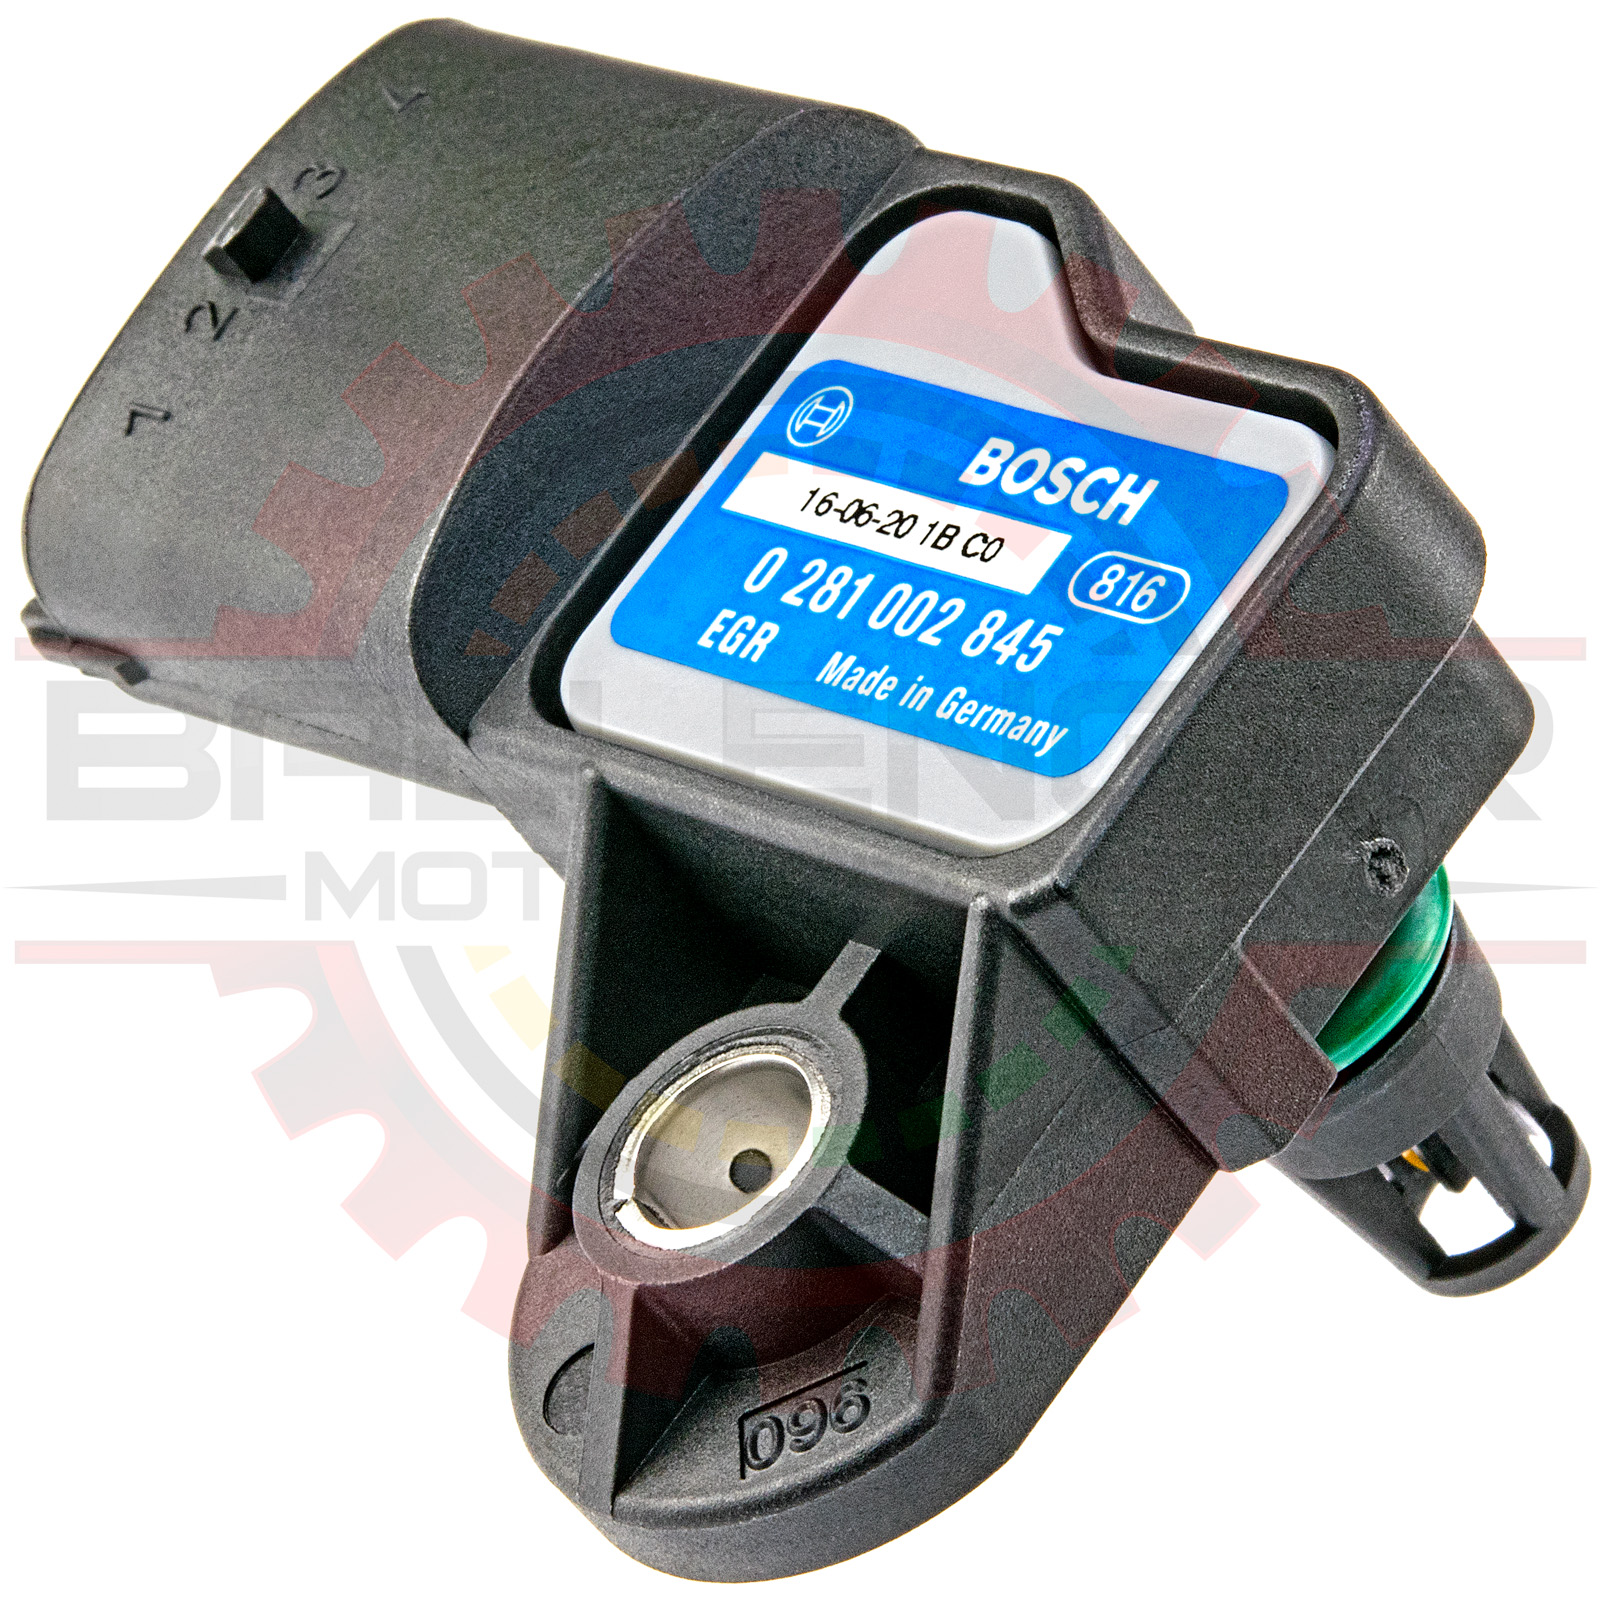 Dreigend barricade masker Home » Shop » Sensors » Pressure Sensors » Bosch 3 Bar TMap Map Sensor with  IAT